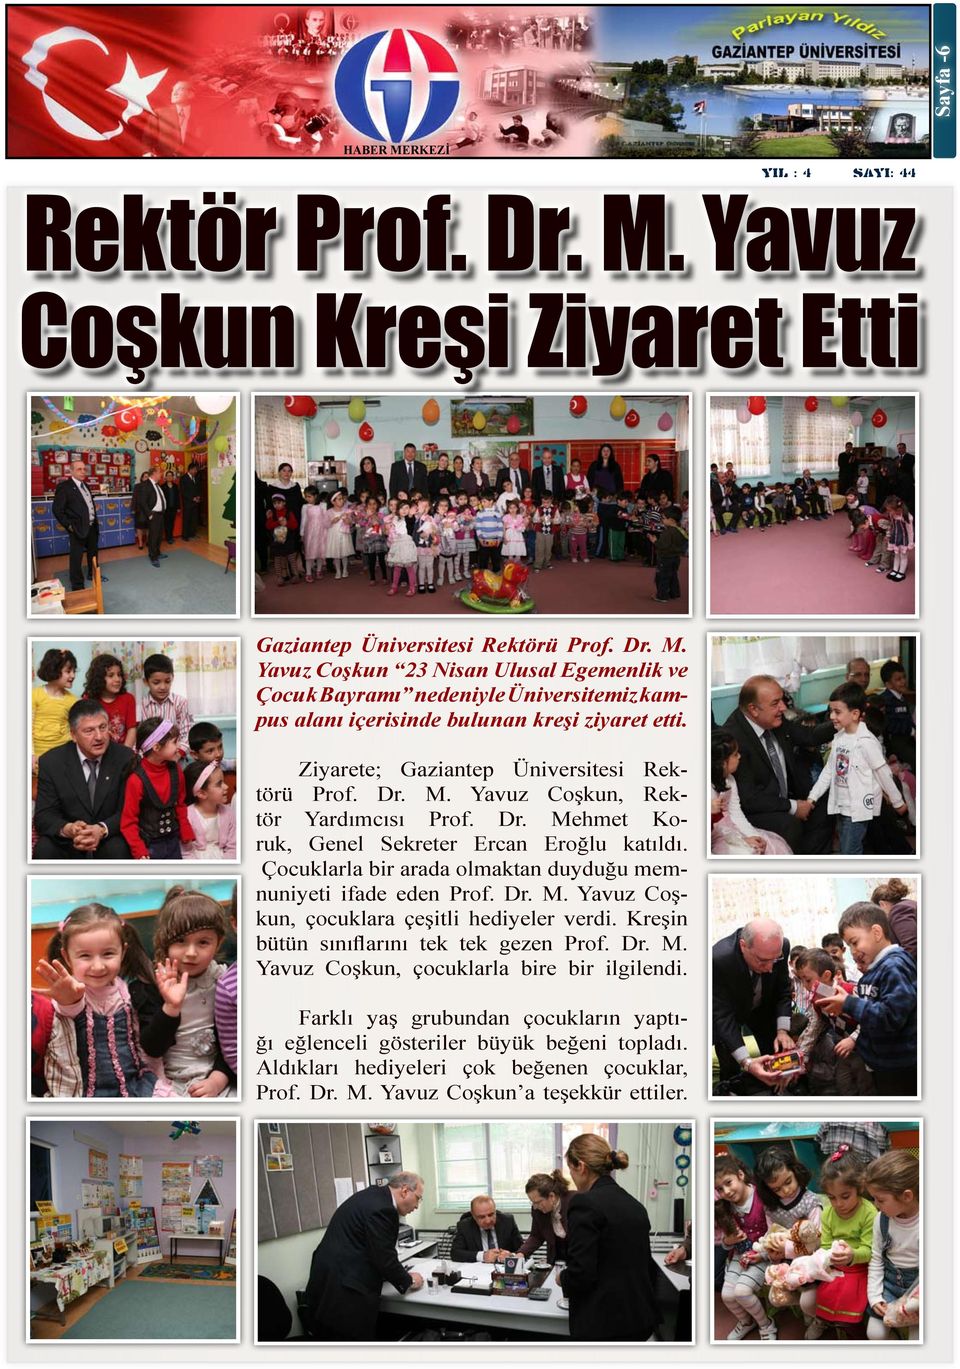 Çocuklarla bir arada olmaktan duyduğu memnuniyeti ifade eden Prof. Dr. M. Yavuz Coşkun, çocuklara çeşitli hediyeler verdi. Kreşin bütün sınıflarını tek tek gezen Prof. Dr. M. Yavuz Coşkun, çocuklarla bire bir ilgilendi.